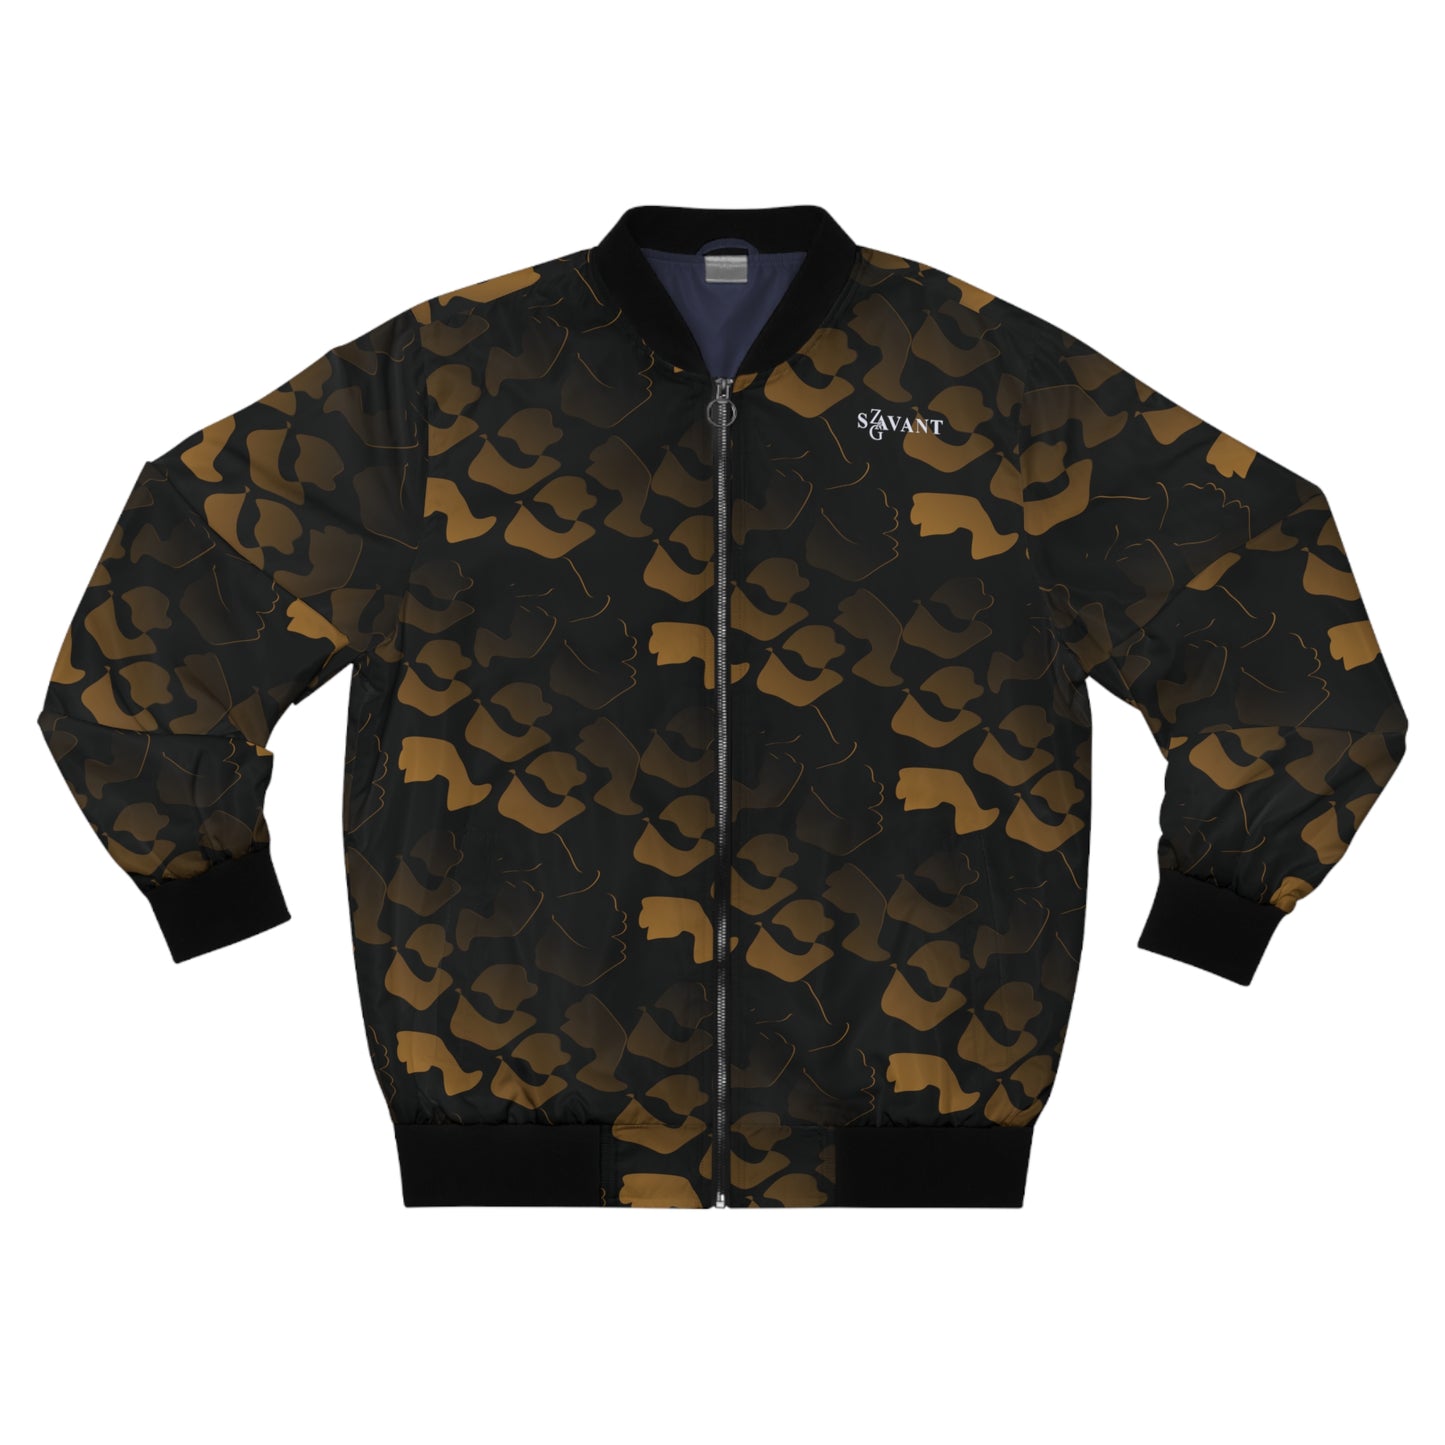 Black and Gold Men's Bomber Jacket